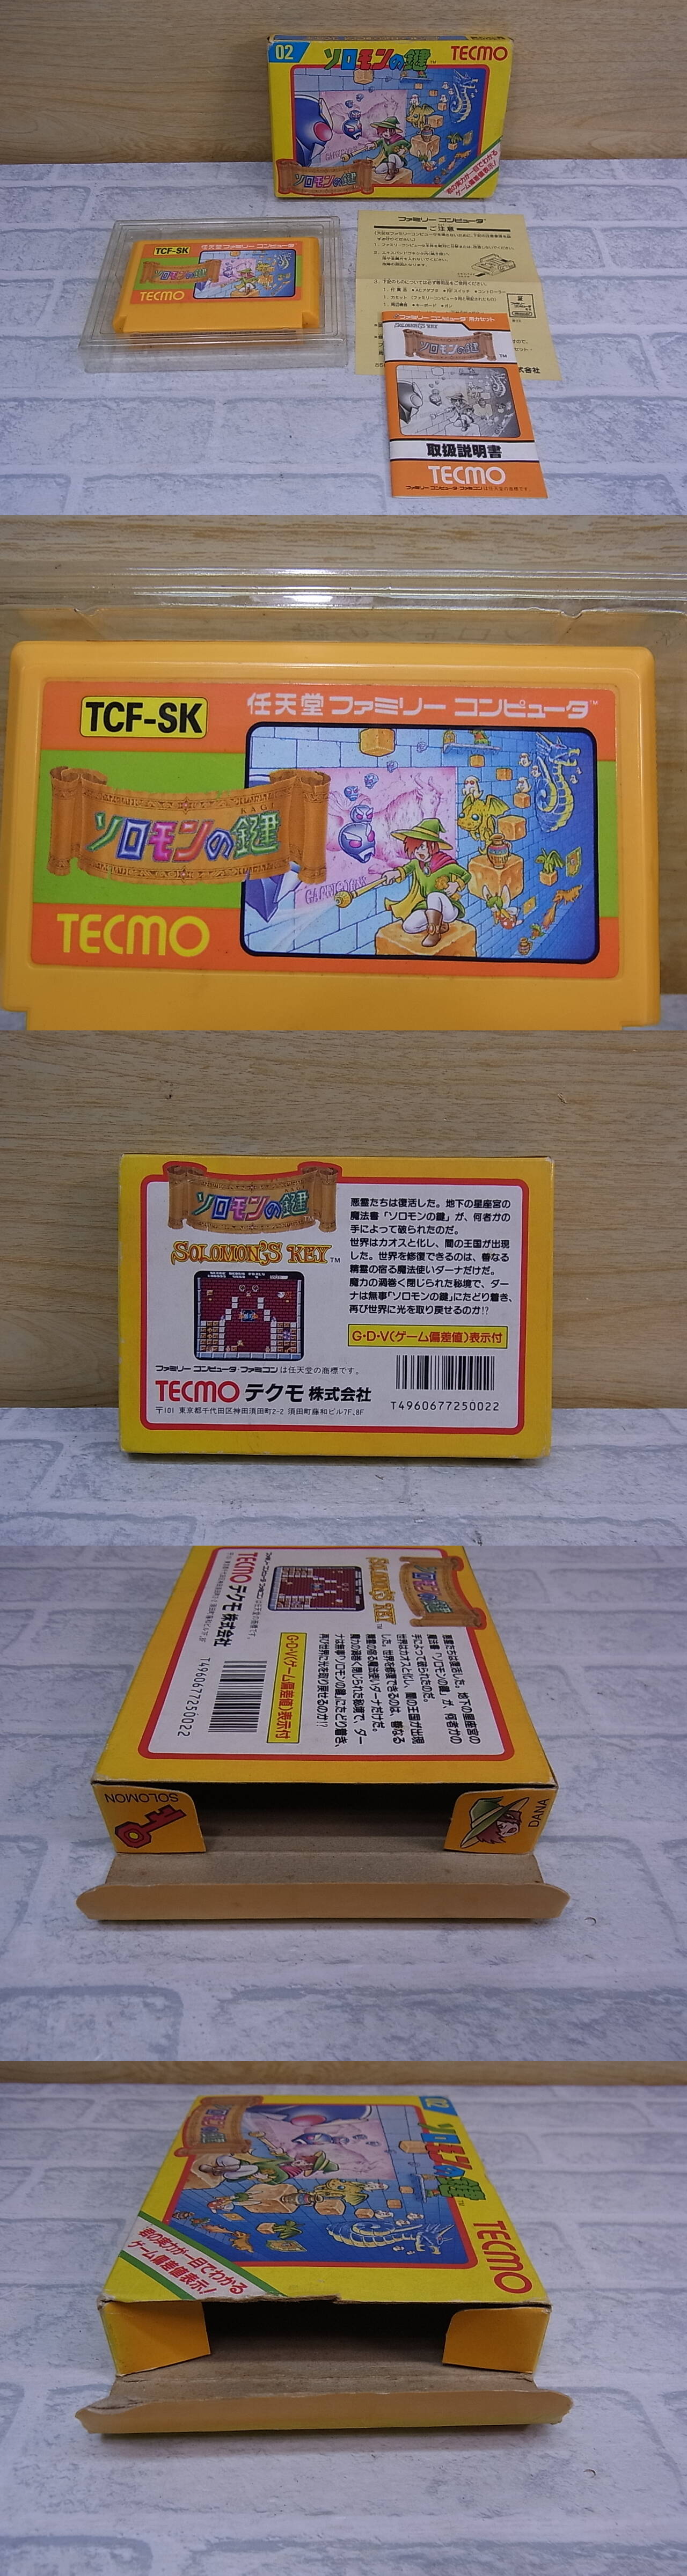 ◎L/040○テクモ TECMO☆ソロモンの鍵☆ファミコン(FC)用カセット 